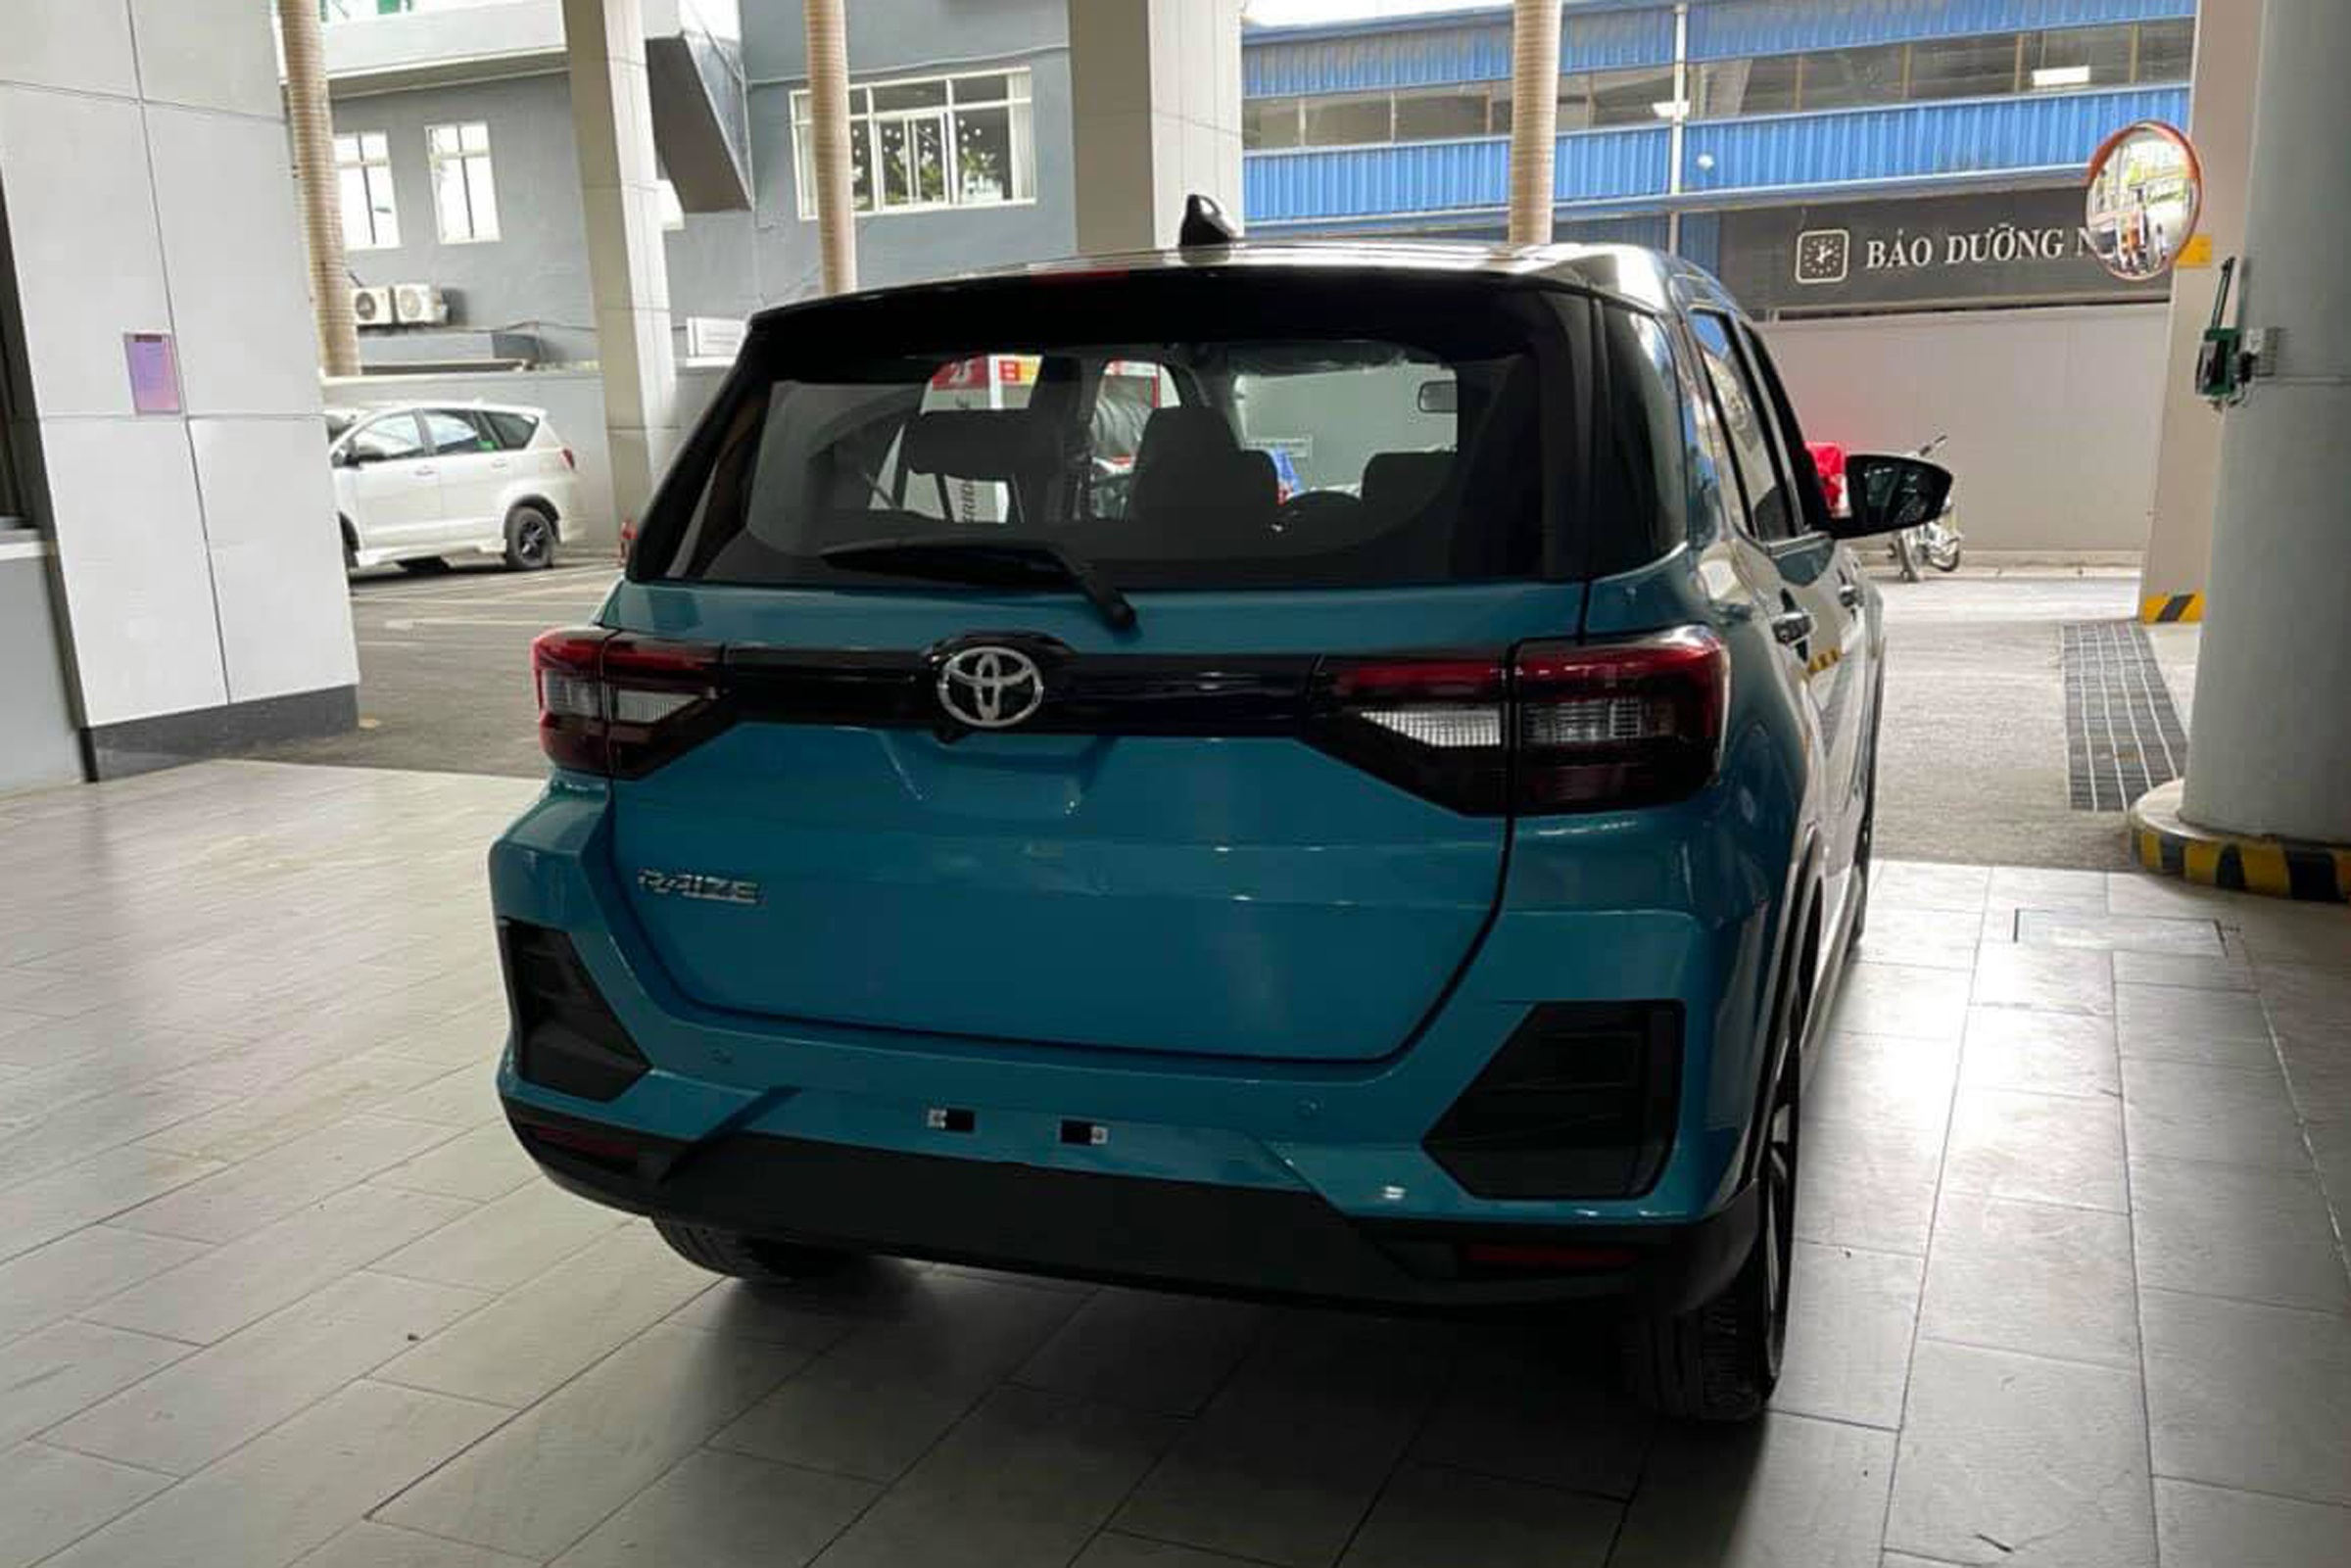 Toyota Raize bất ngờ về Hà Nội, đại lý hé lộ giá dưới 500 triệu đồng - 2